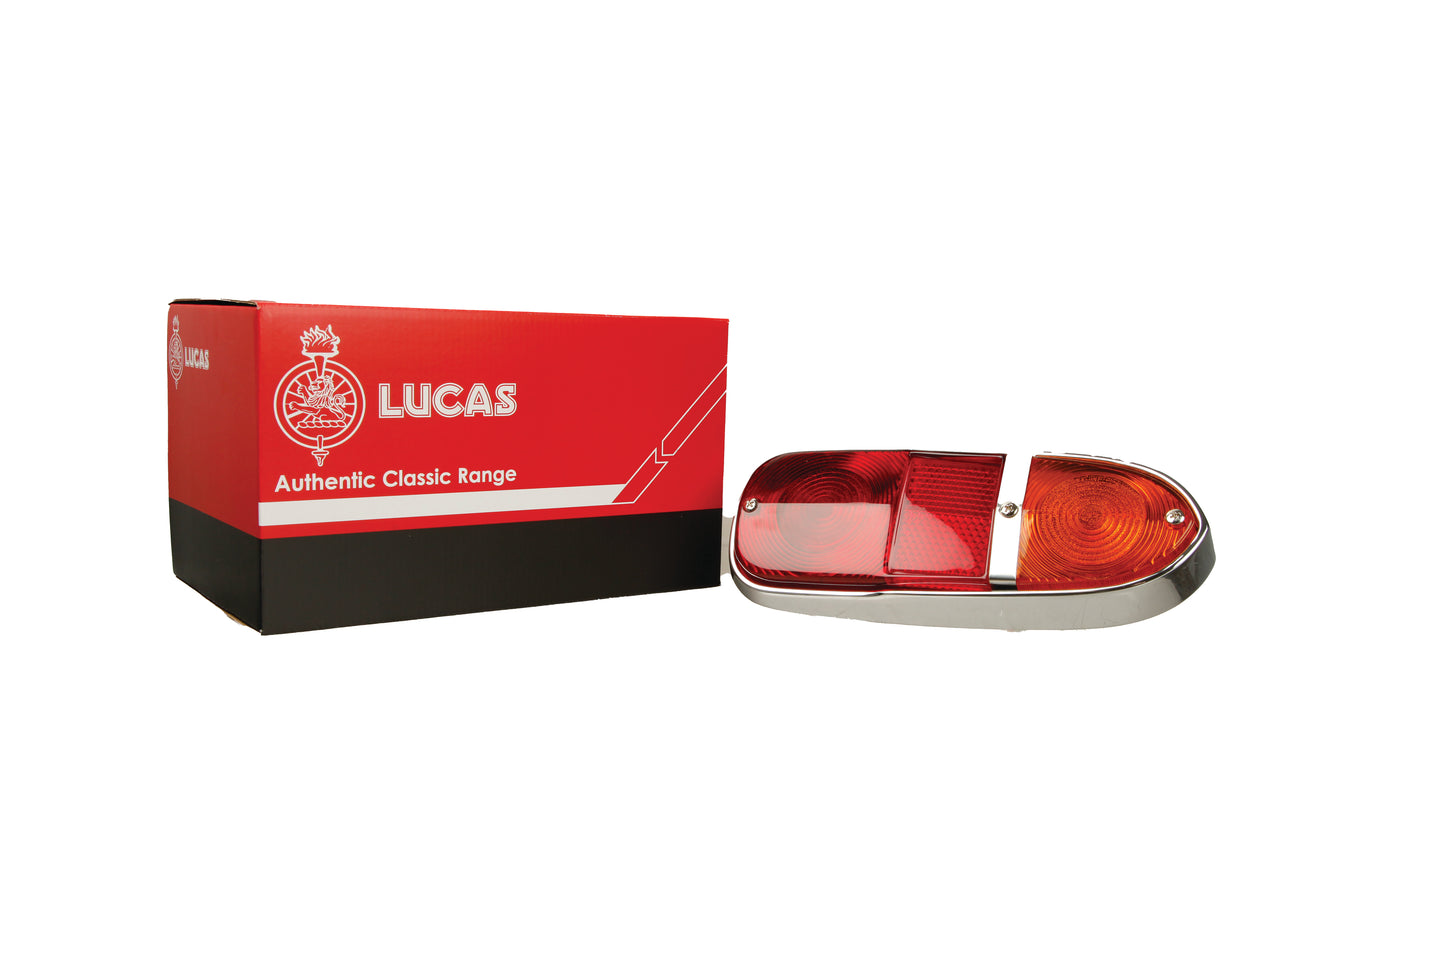 Lucas L669 Type Rear Lamp DB6, TR4